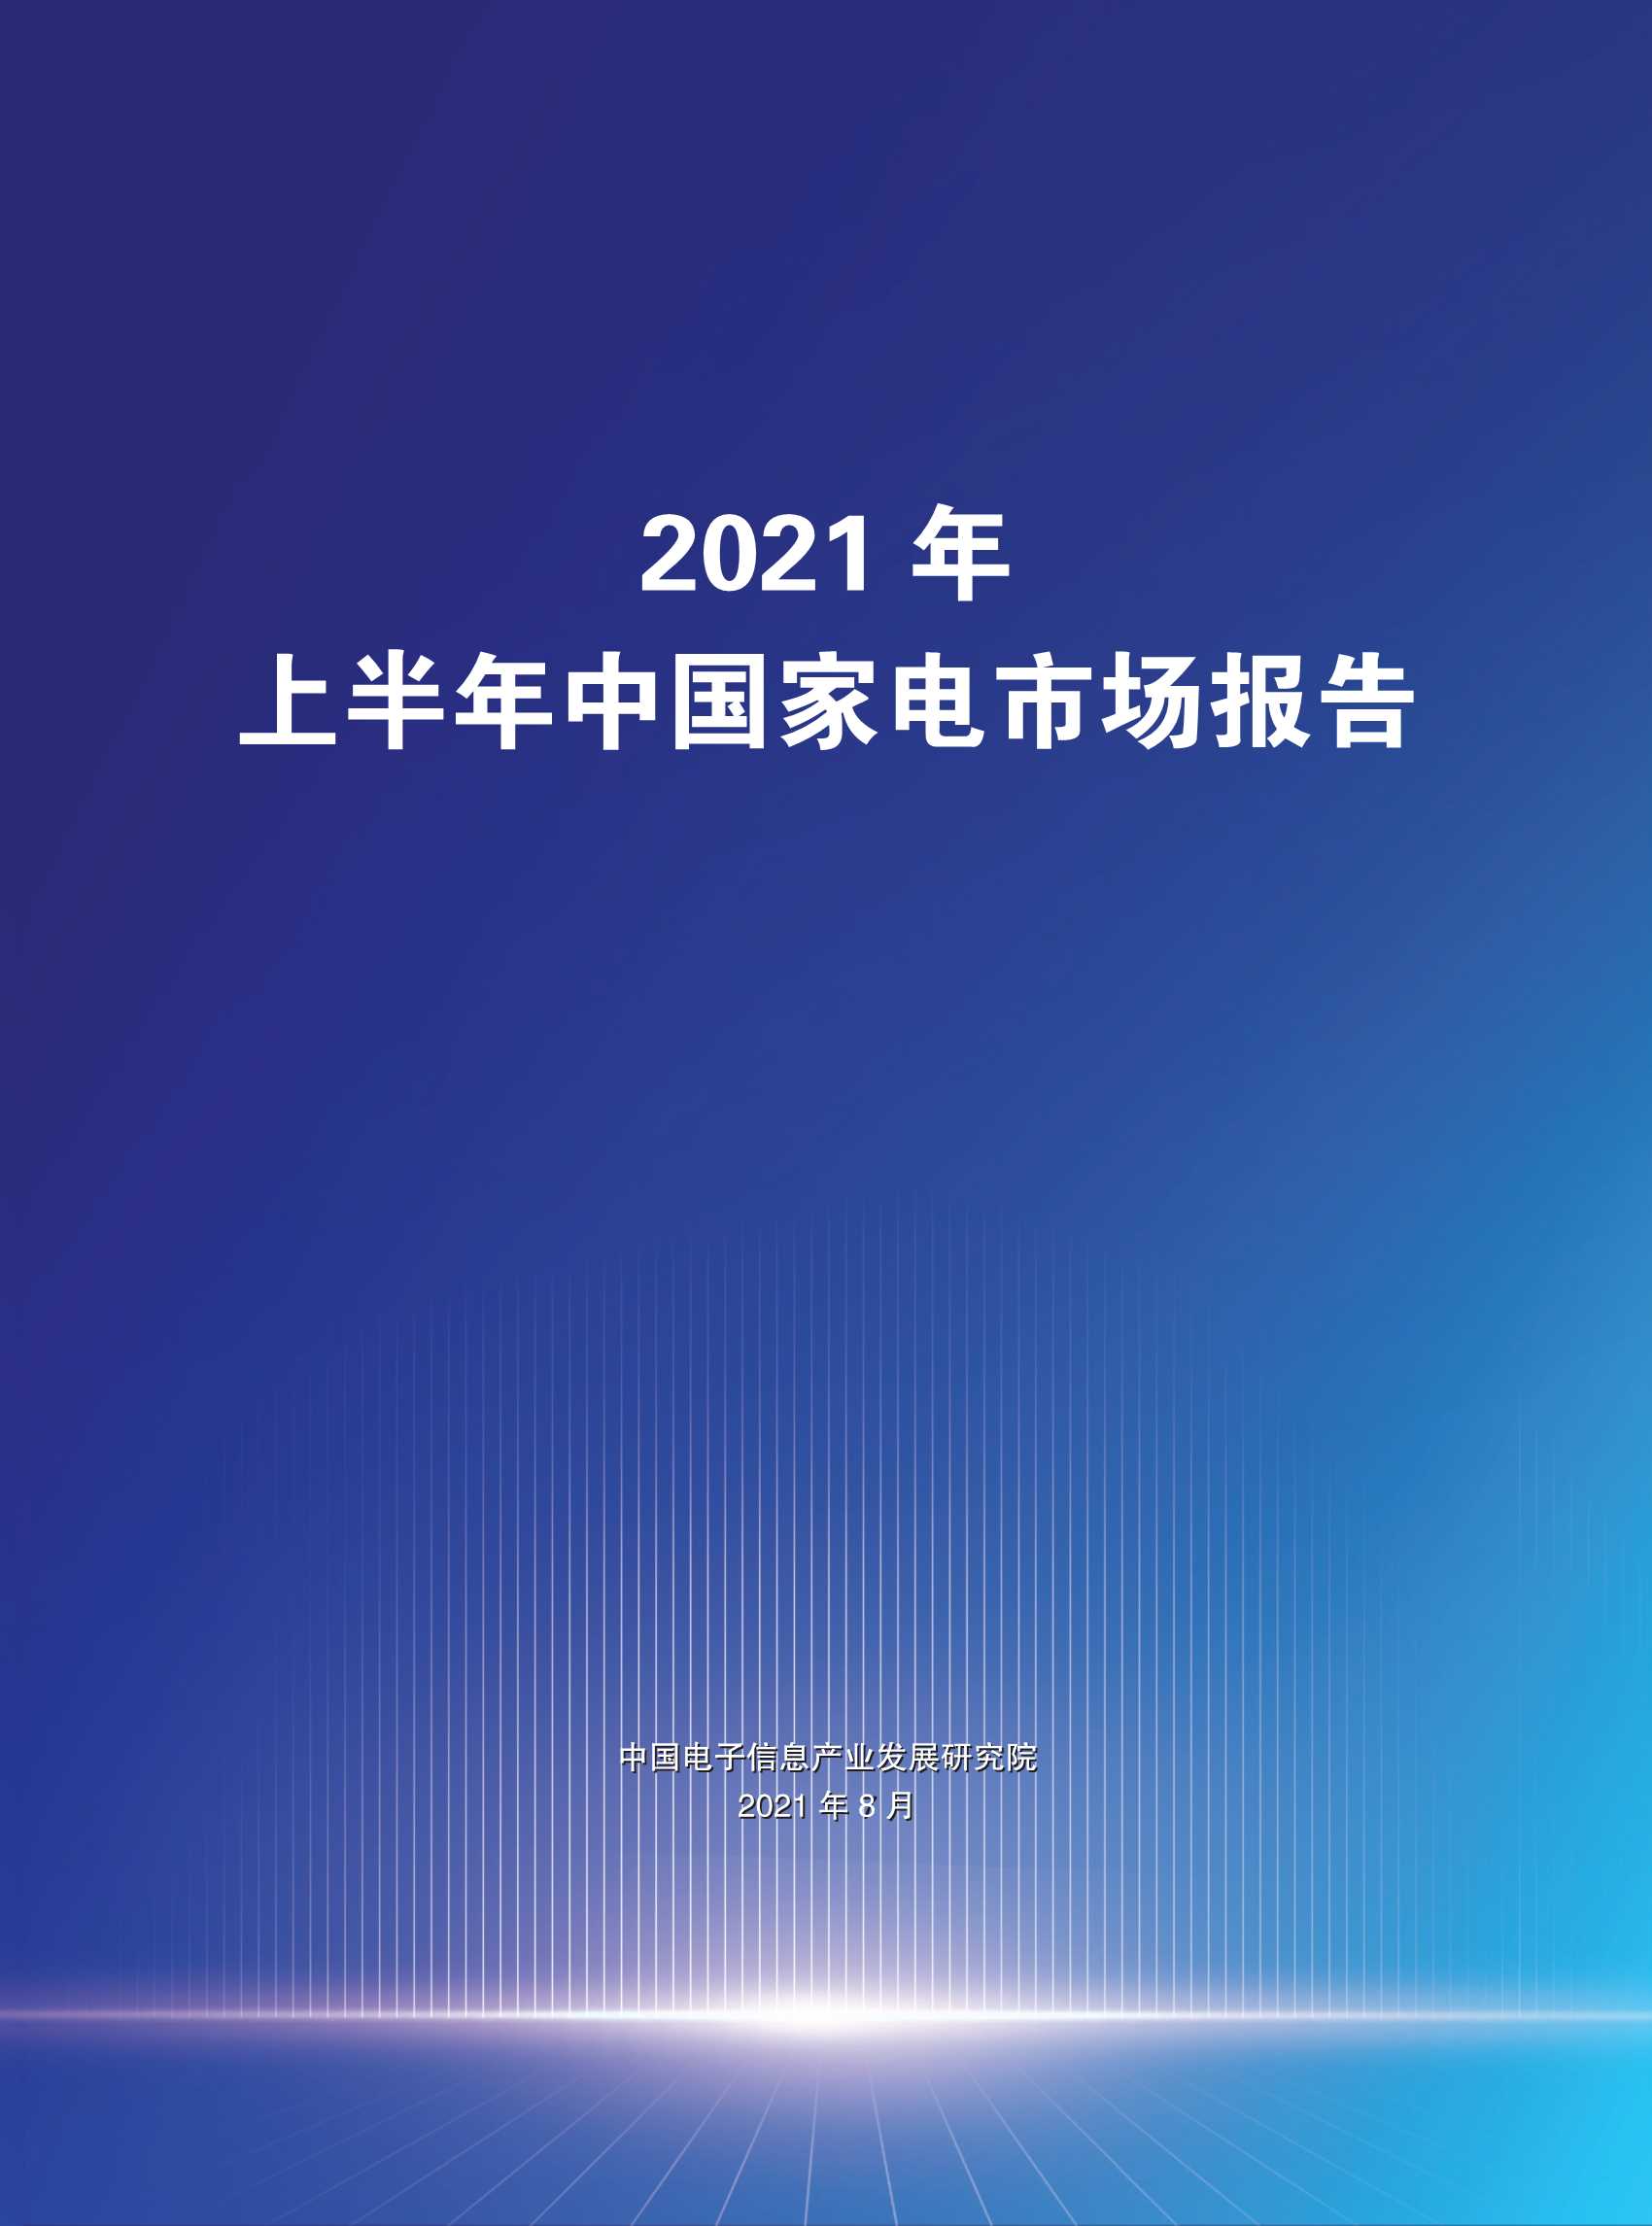 赛迪-2021年上半年中国家电市场报告-2021.08-34页